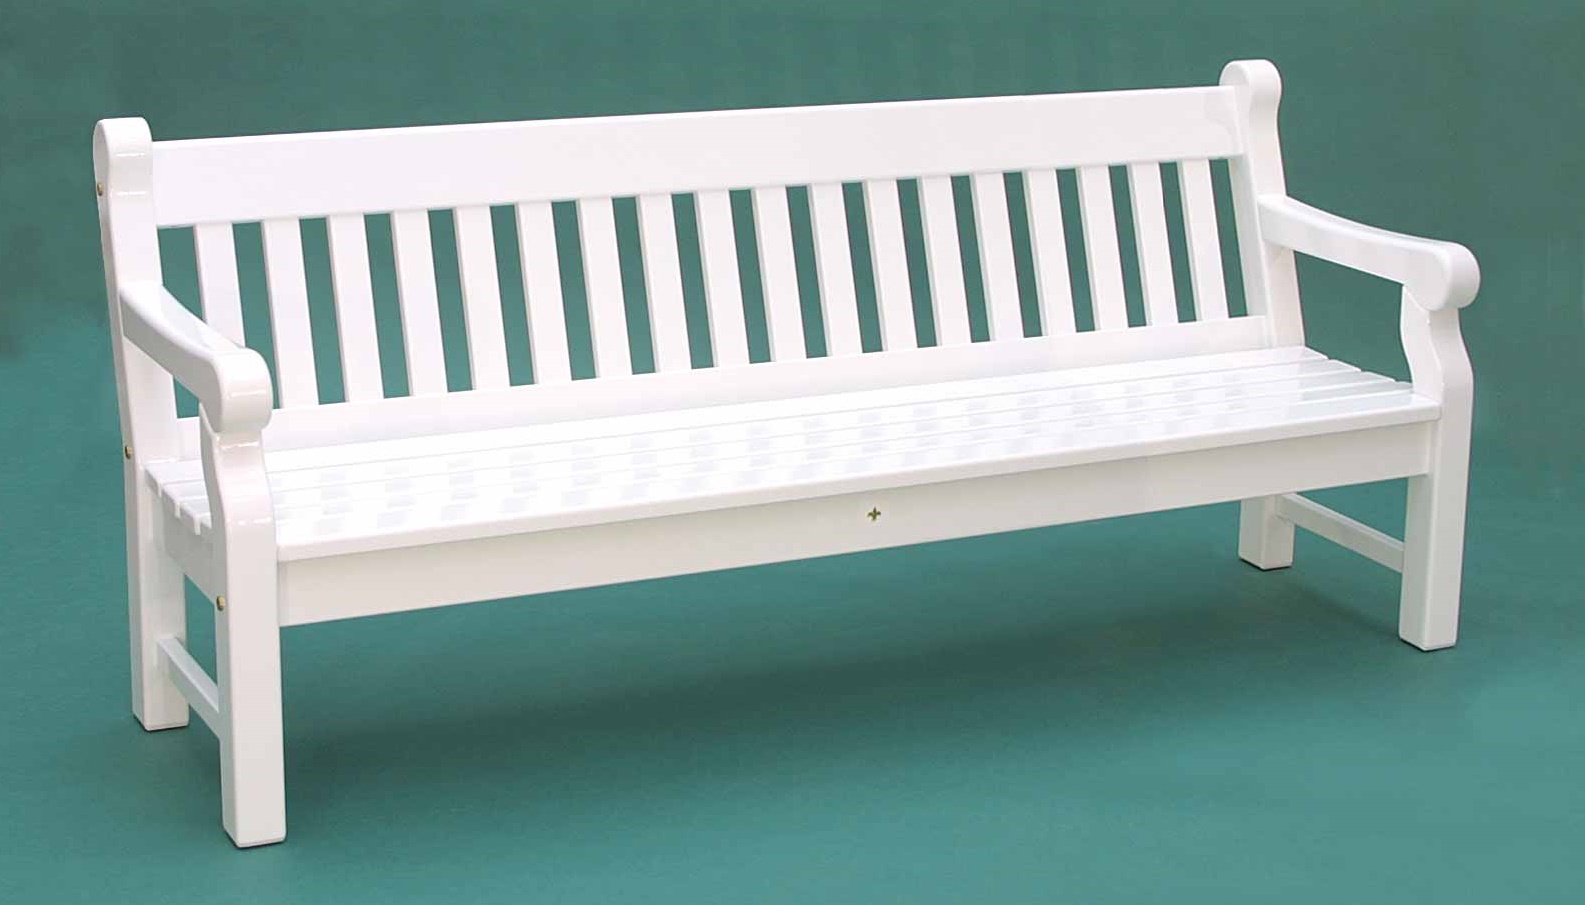 Gartenbank Weiß 4 Sitzer Windsor Holz Das Design Ist Stark Und Robust Beine Sind Durch Ihre Größe Nicht Unterstützt